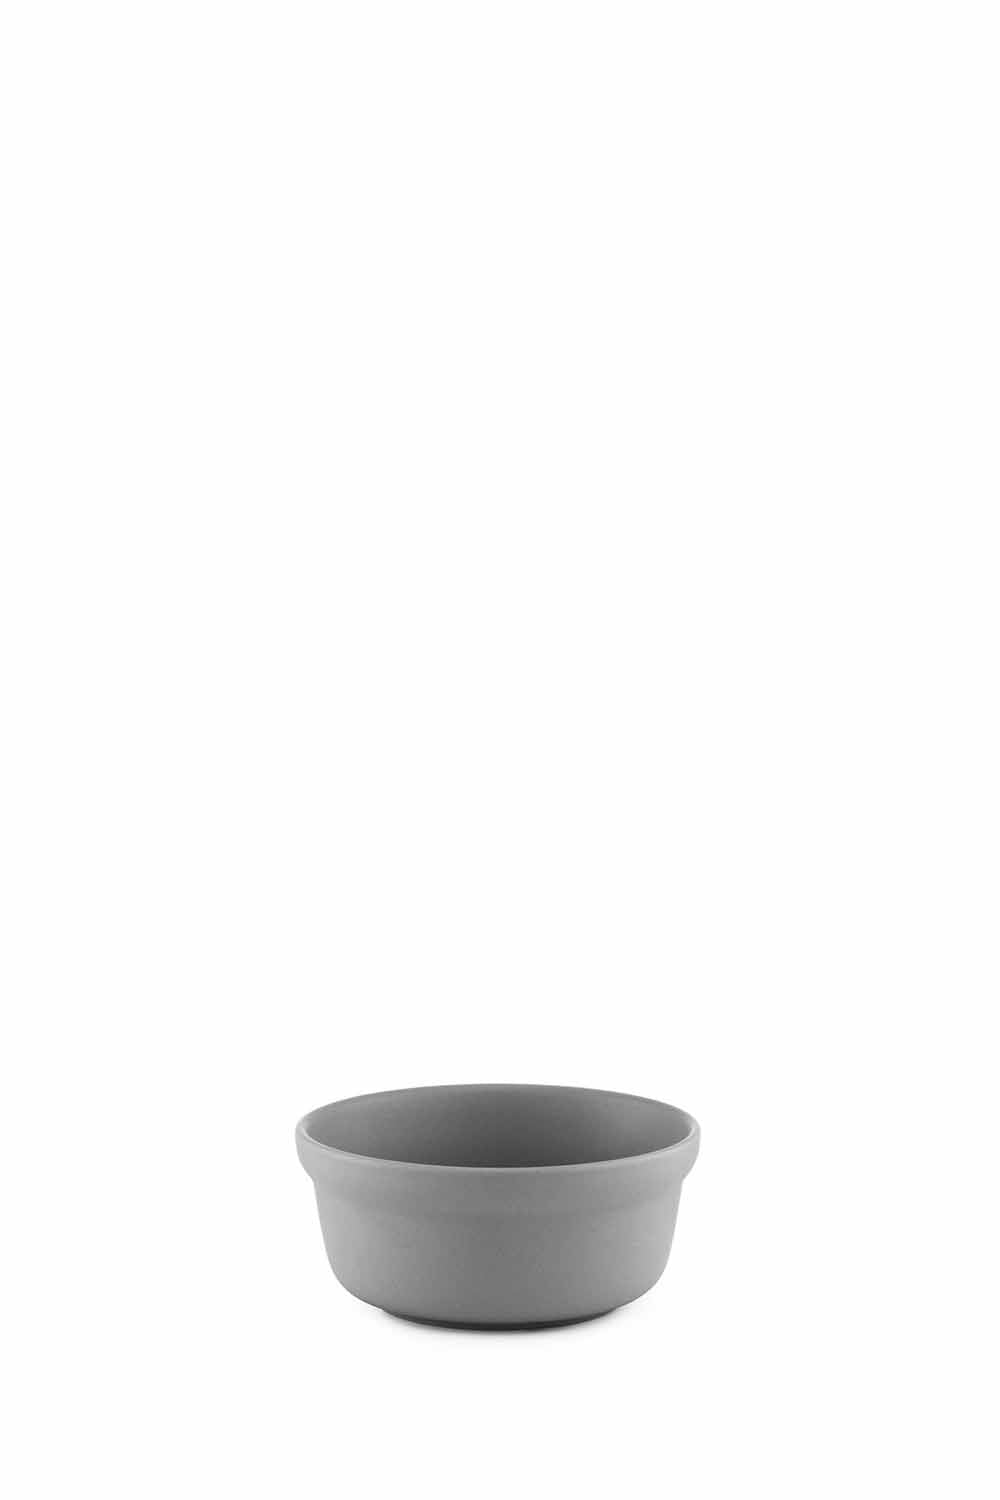 Obi Bowl, 11cm, Grey